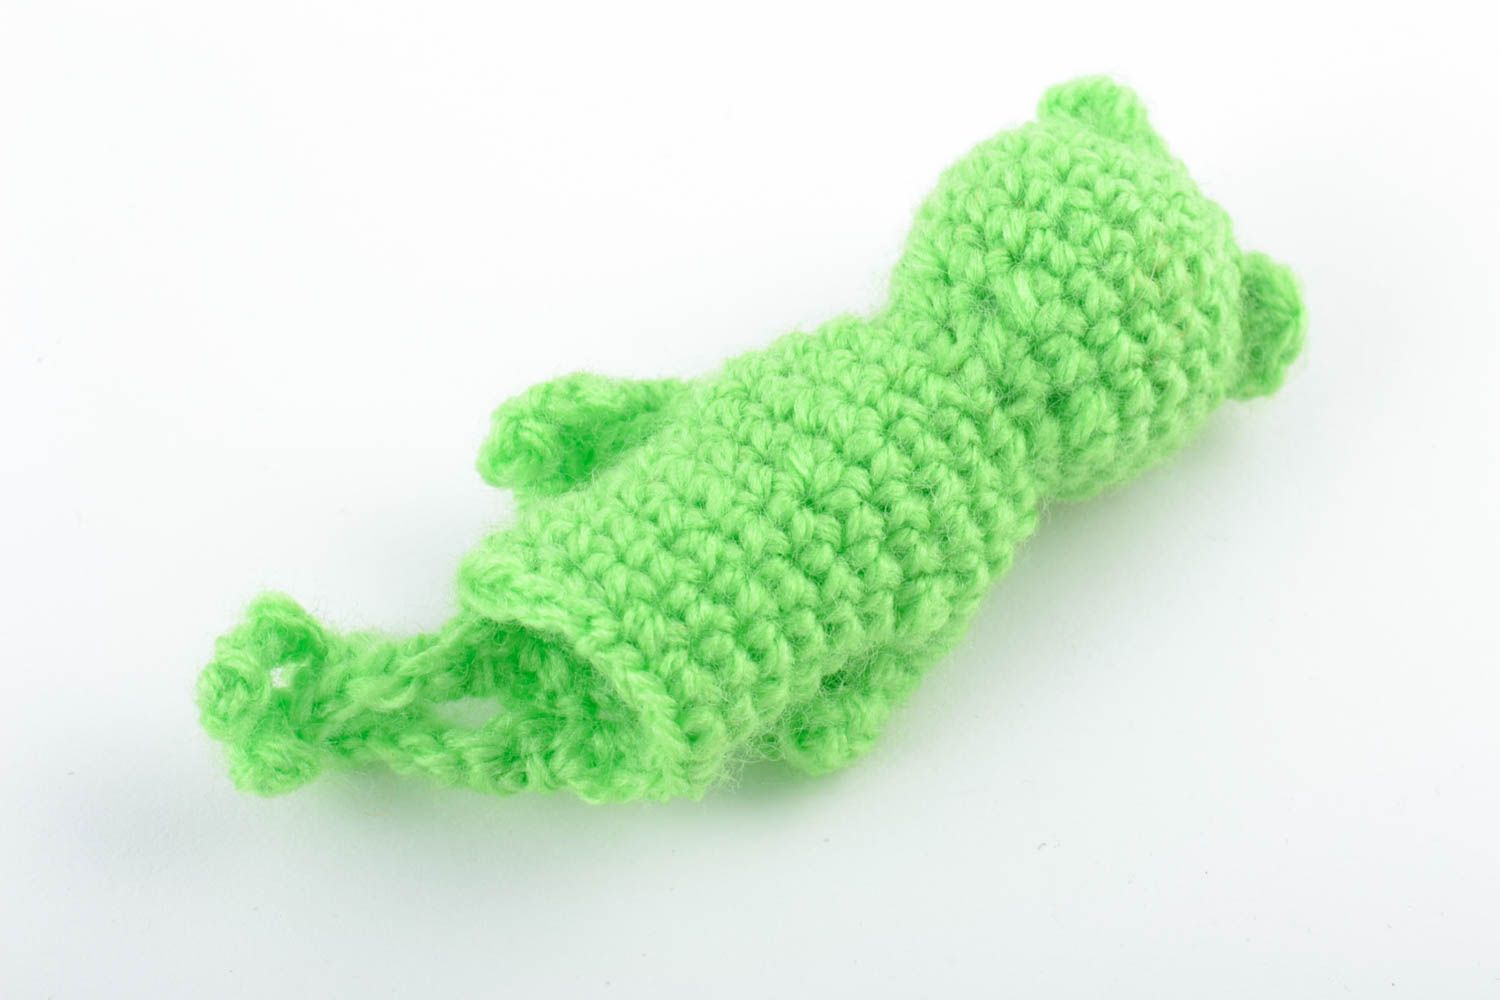 Textil Fingerpuppe Frosch in Grün aus Baumwolle und Wolle gehäkelt handmade foto 4